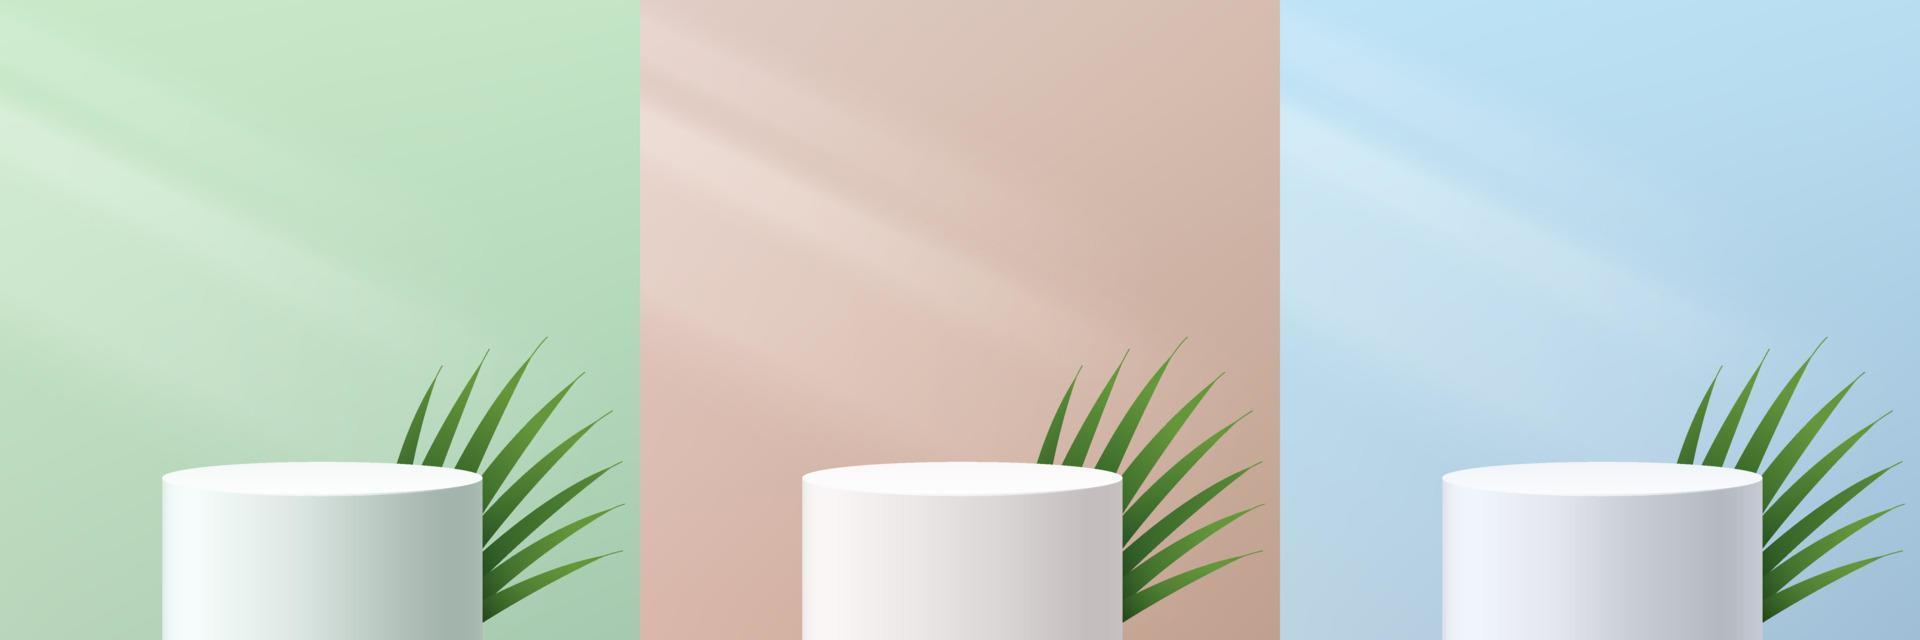 set di podio con piedistallo a cilindro bianco 3d astratto con foglia di cocco e scena a parete verde pastello, beige e blu. moderna piattaforma geometrica di rendering vettoriale per la presentazione di prodotti cosmetici.